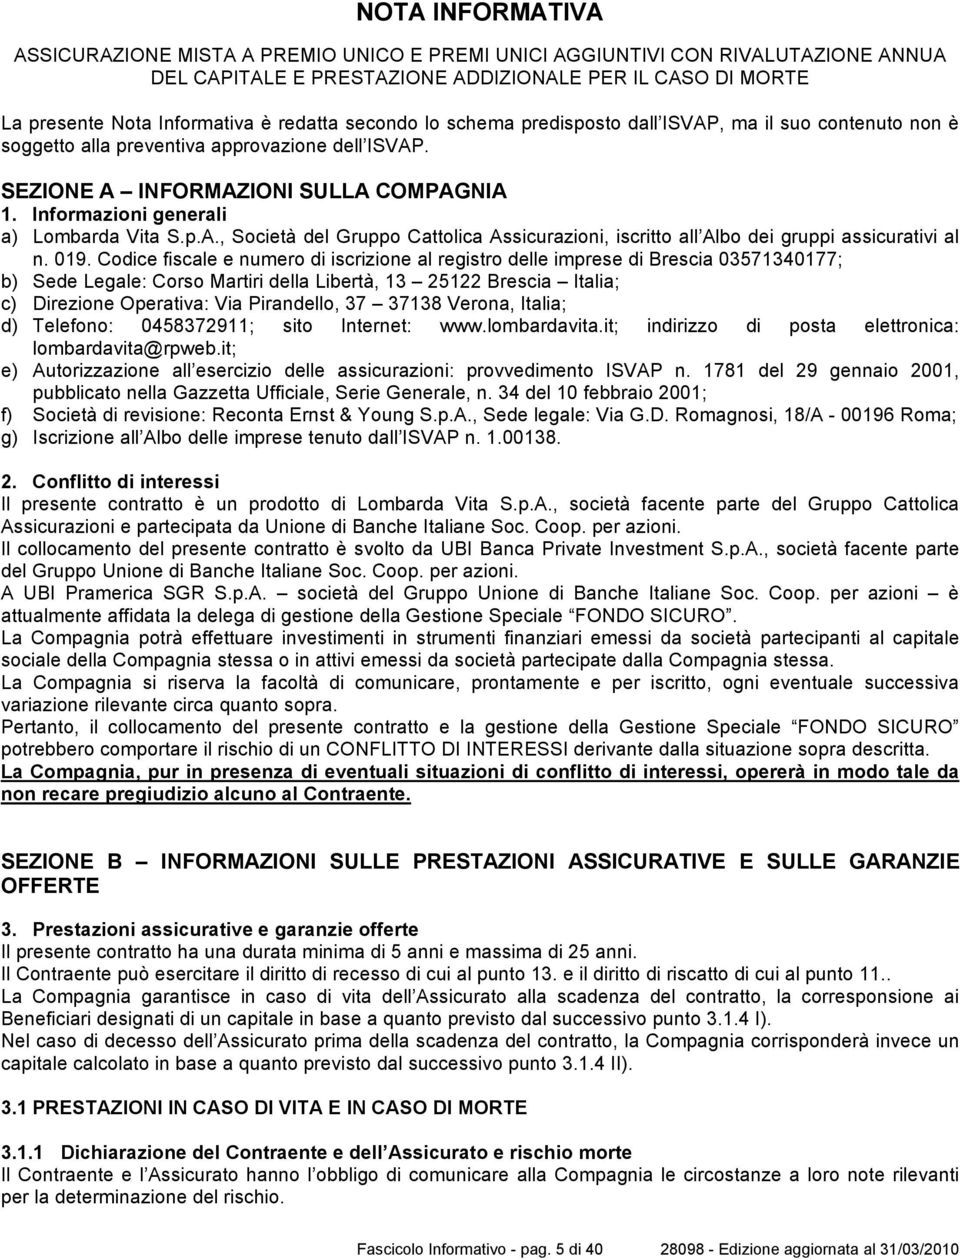 Informazioni generali a) Lombarda Vita S.p.A., Società del Gruppo Cattolica Assicurazioni, iscritto all Albo dei gruppi assicurativi al n. 019.